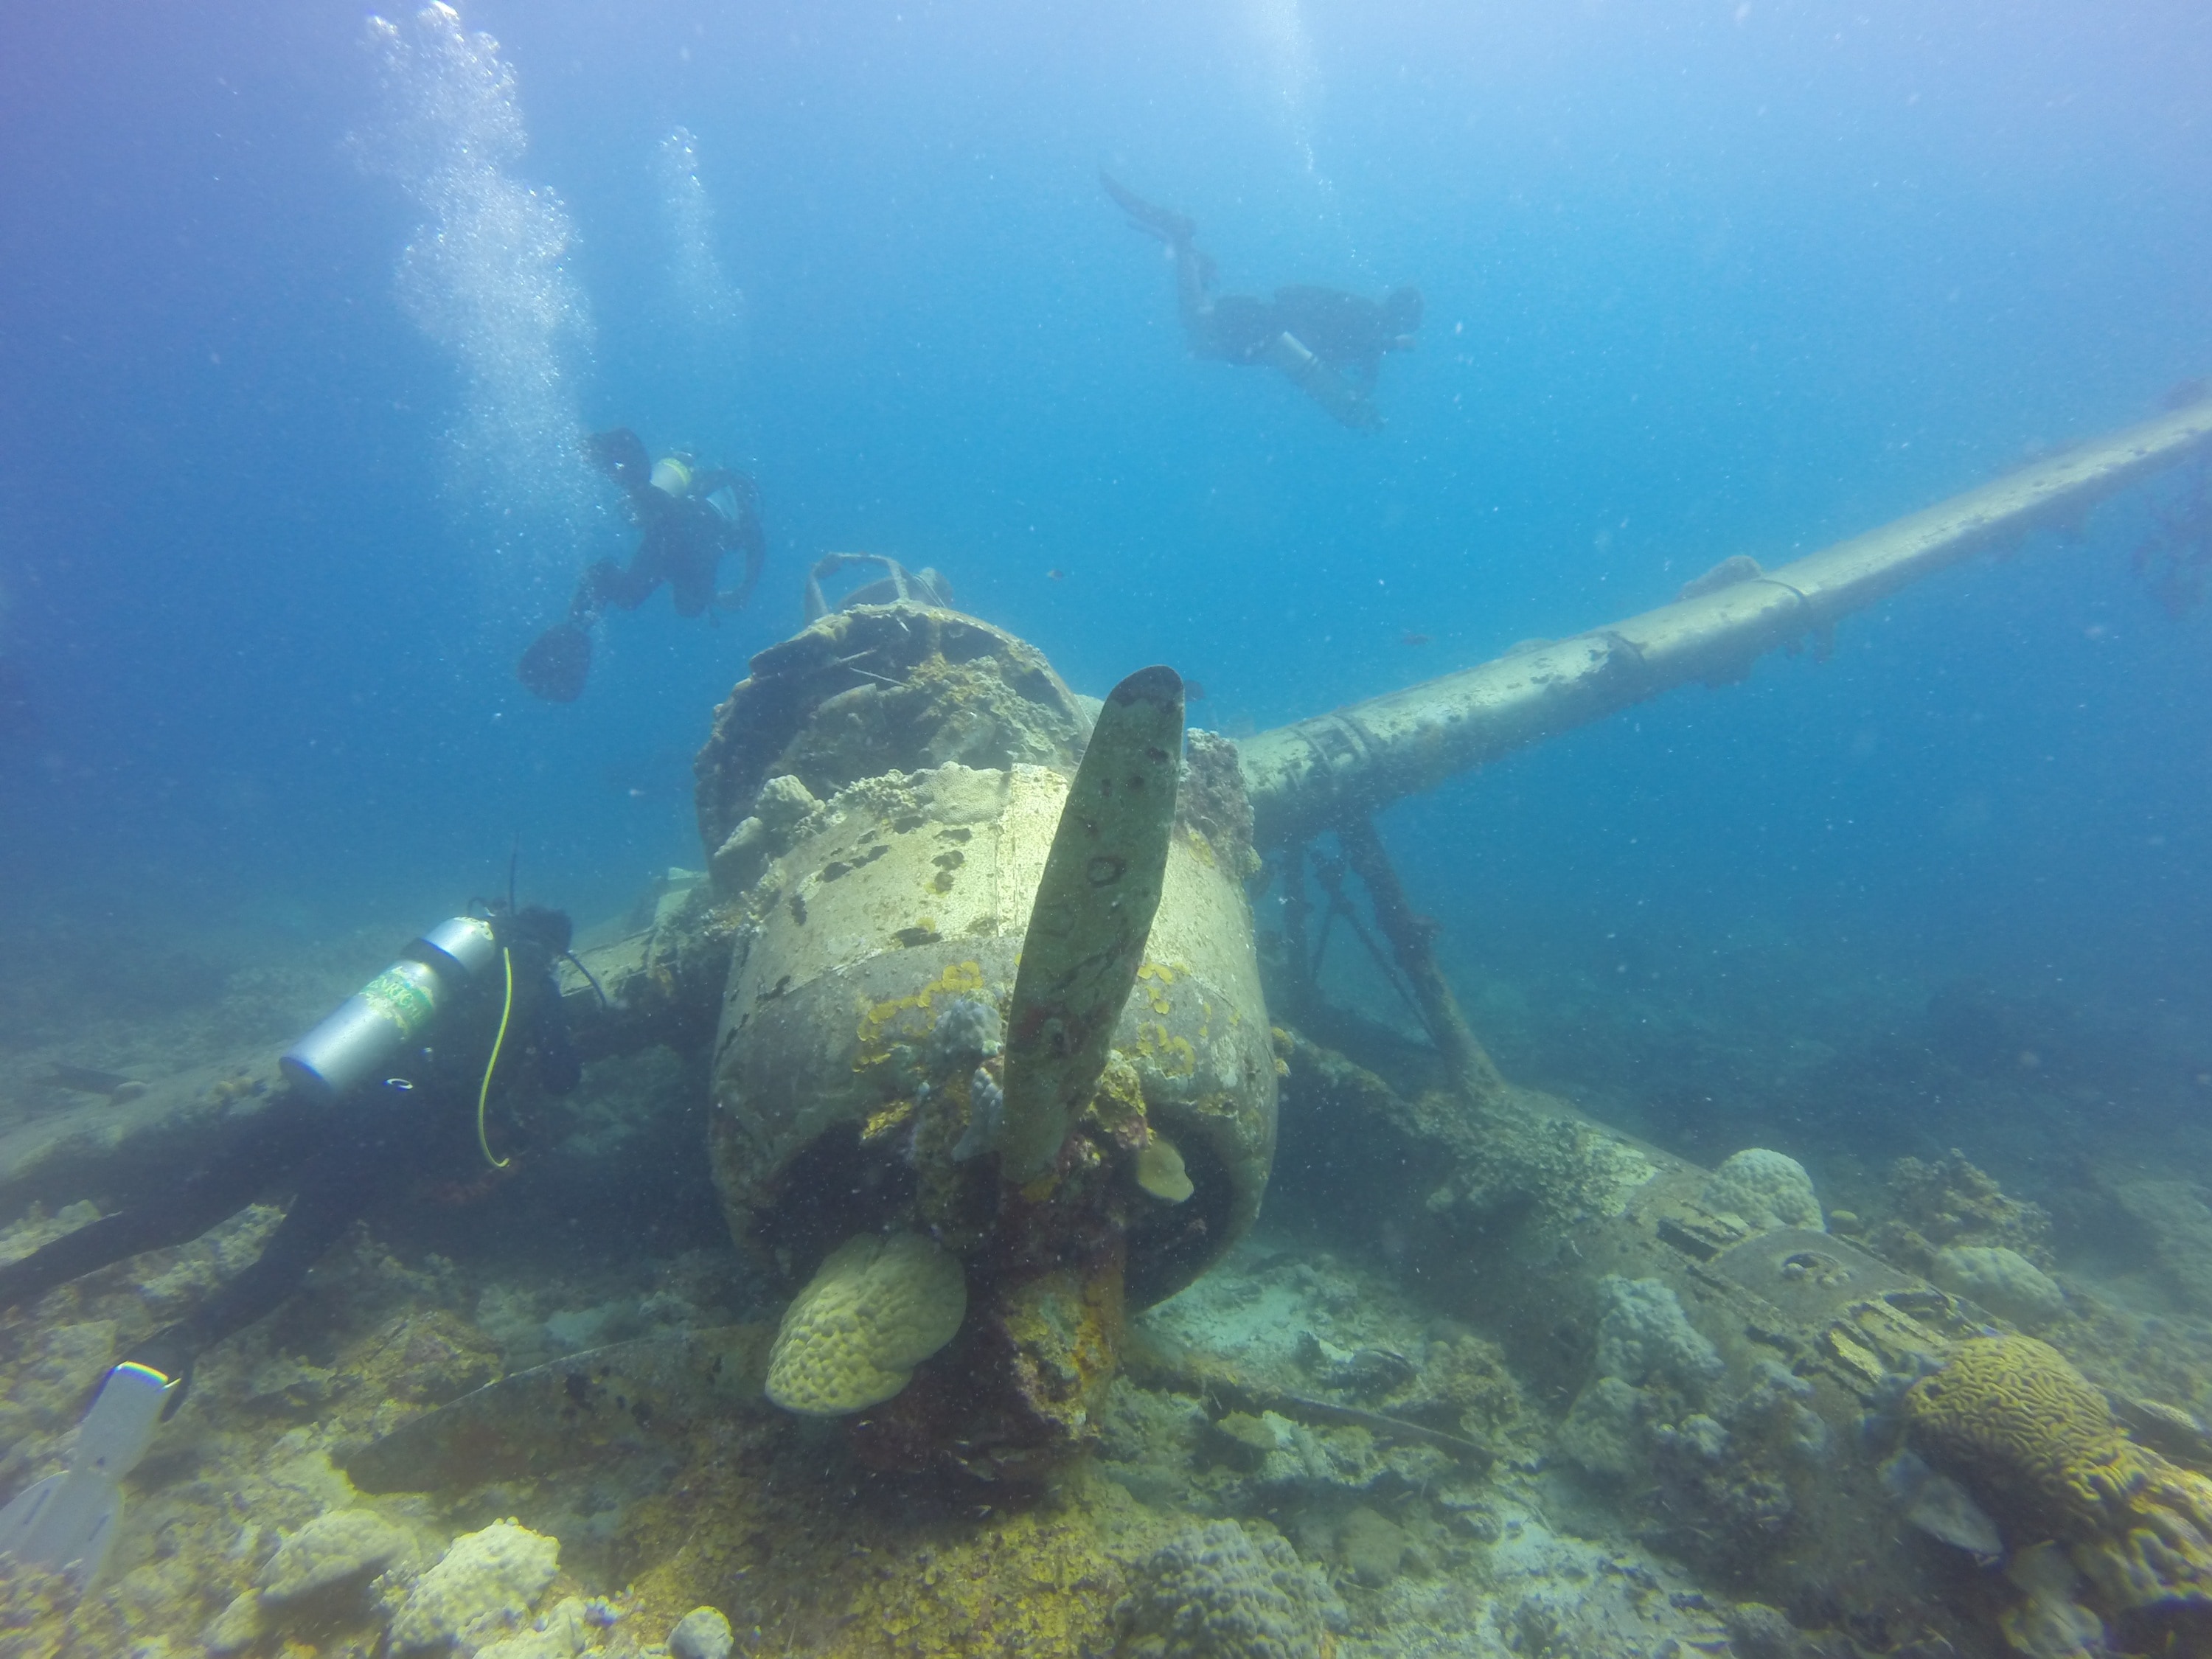 Tora tora plane photo under water